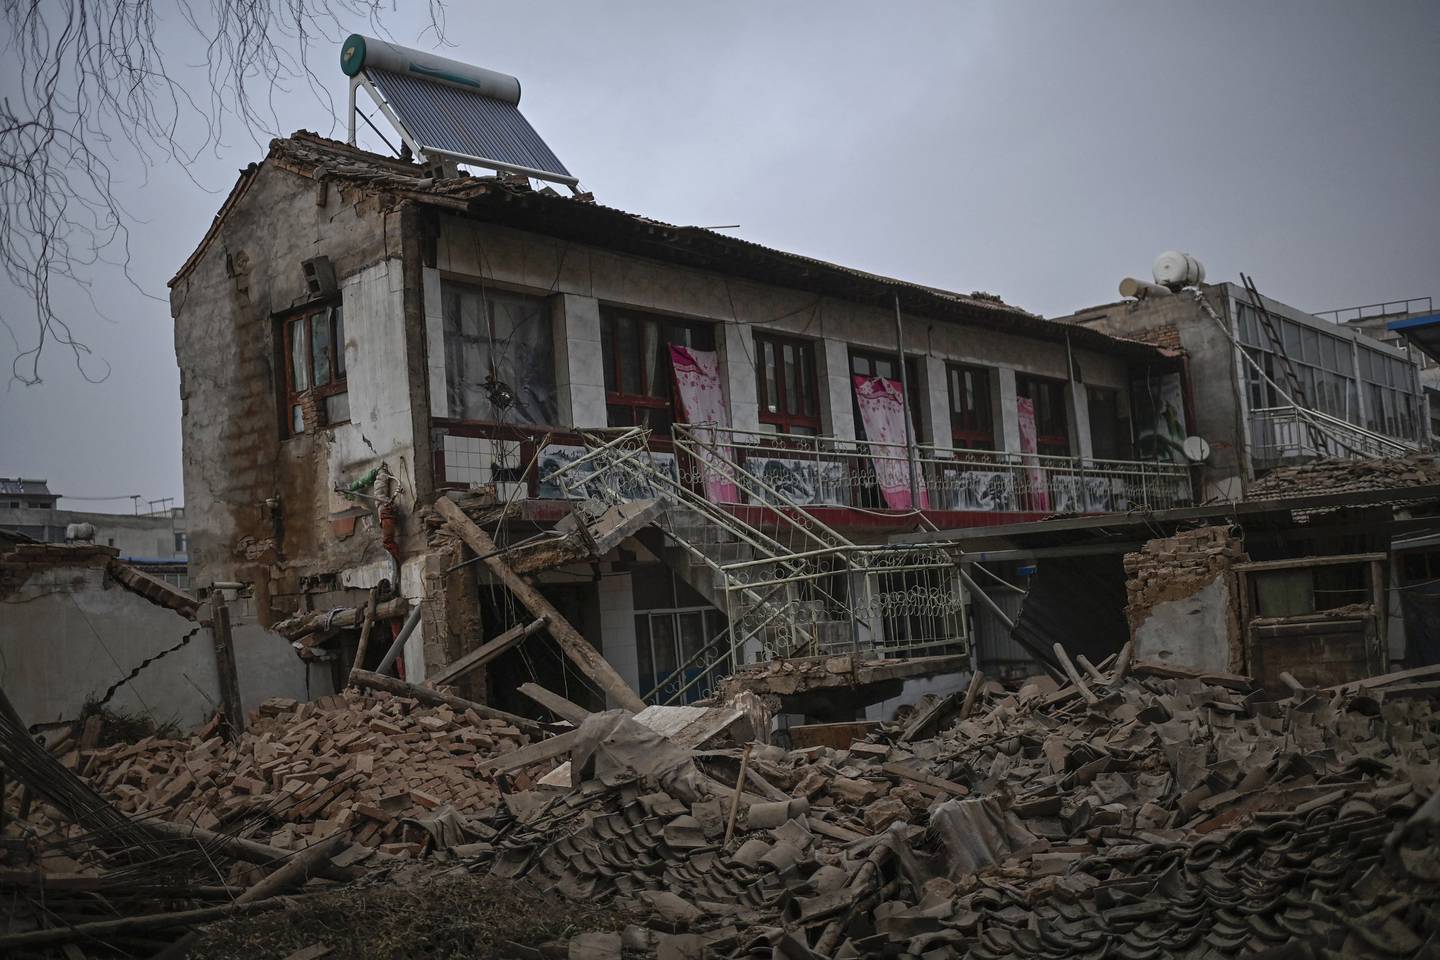 Un potente terremoto en la provincia de Gansu, noroeste de China, dejó al menos 127 muertos y centenares de heridos, con más de 155,000 edificios dañados, según informes oficiales.